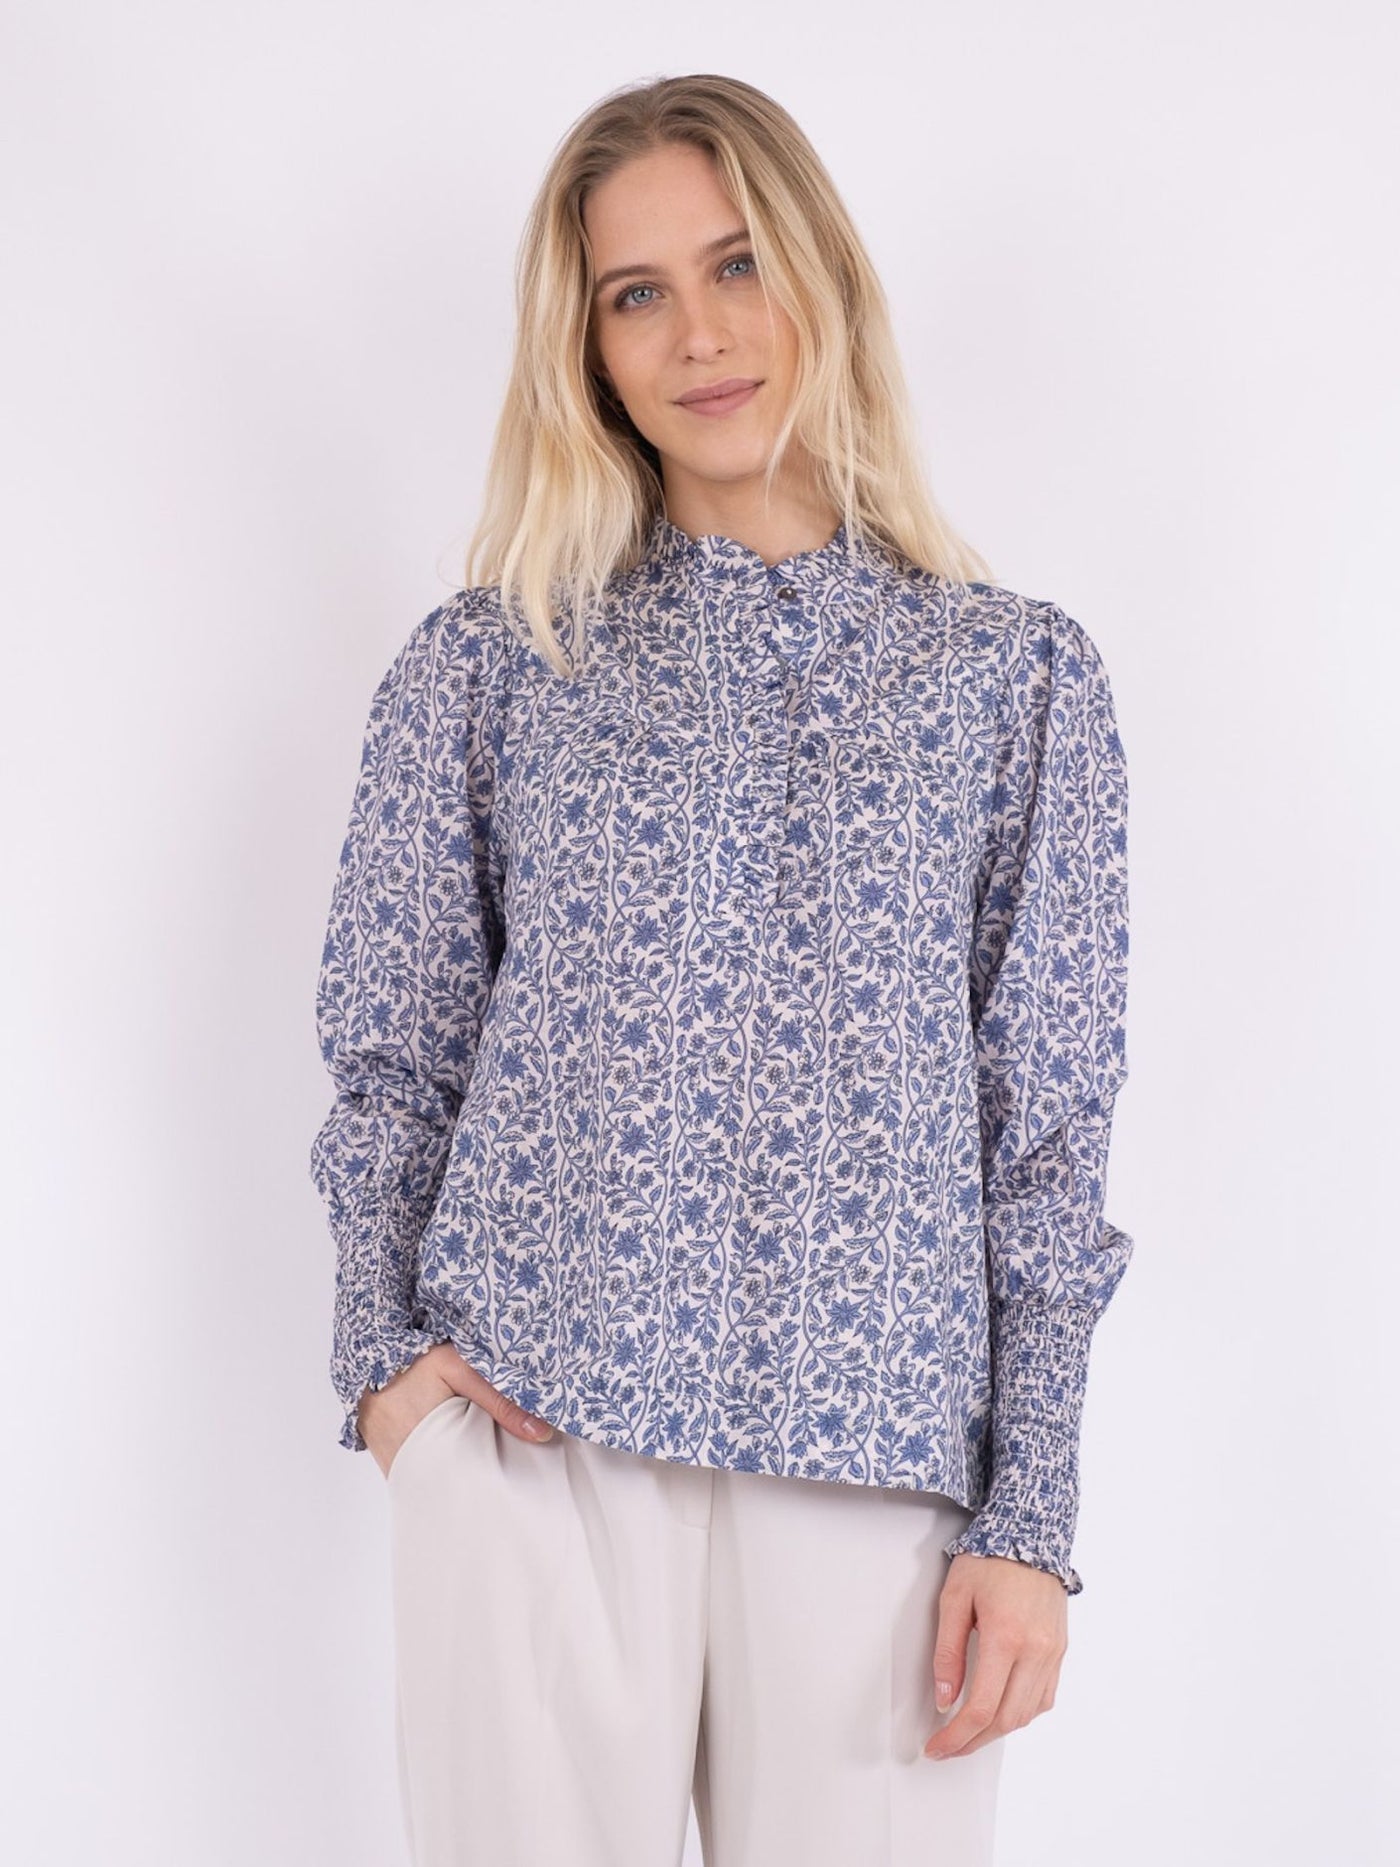 Karia botanical blouse